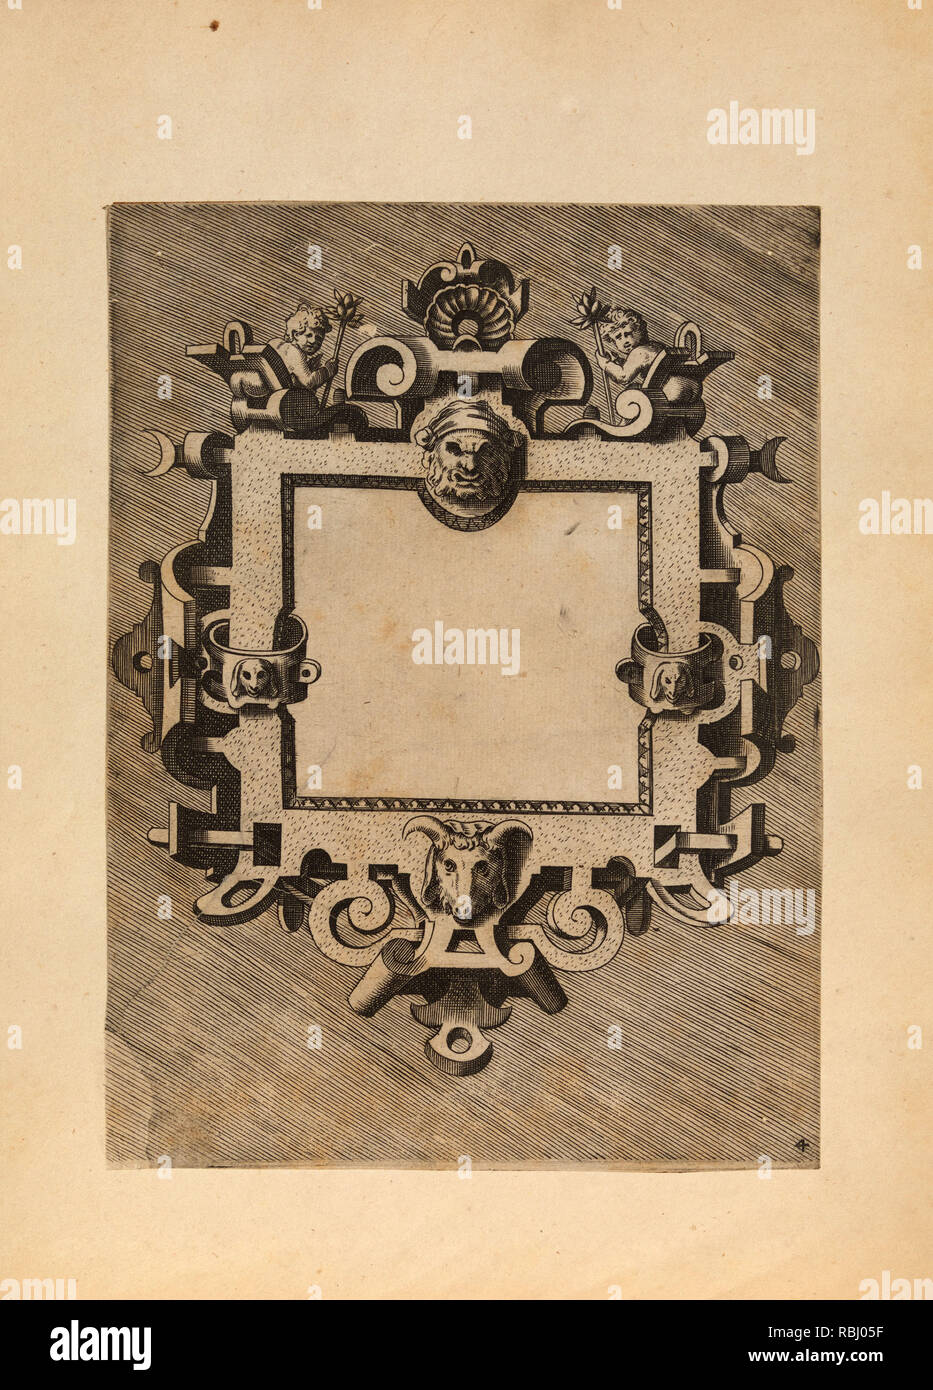 E 1 57 32 fotografías e imágenes de alta resolución - Alamy